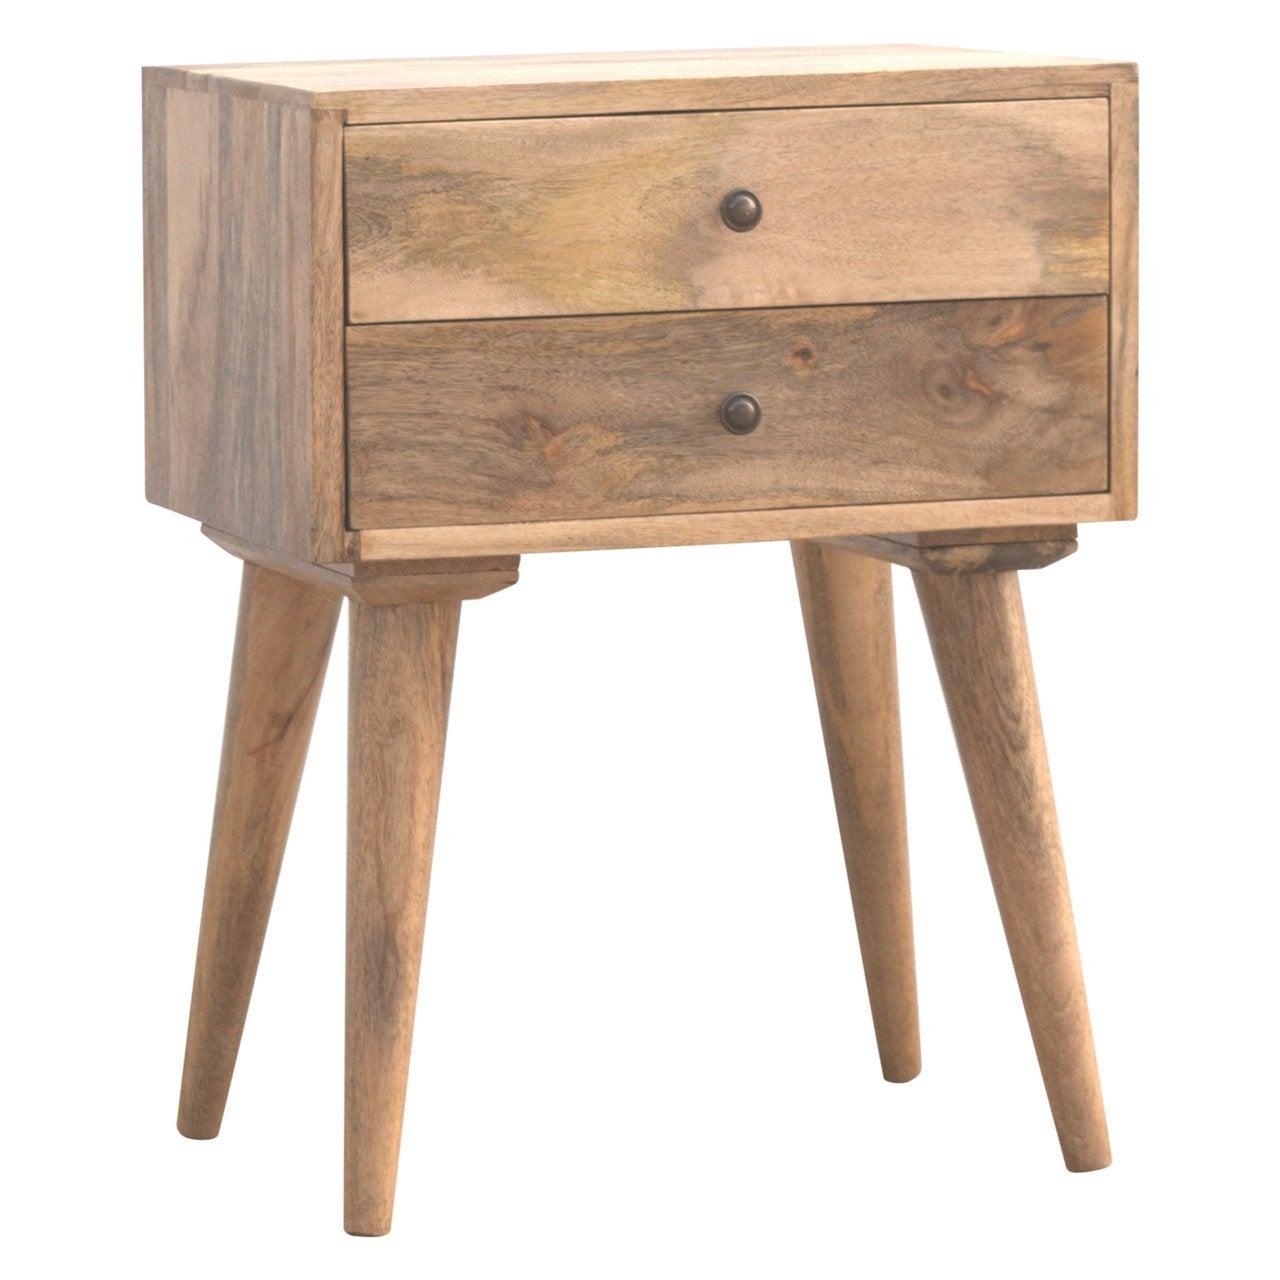 Modern solid wood bedside table - crimblefest furniture - image 4